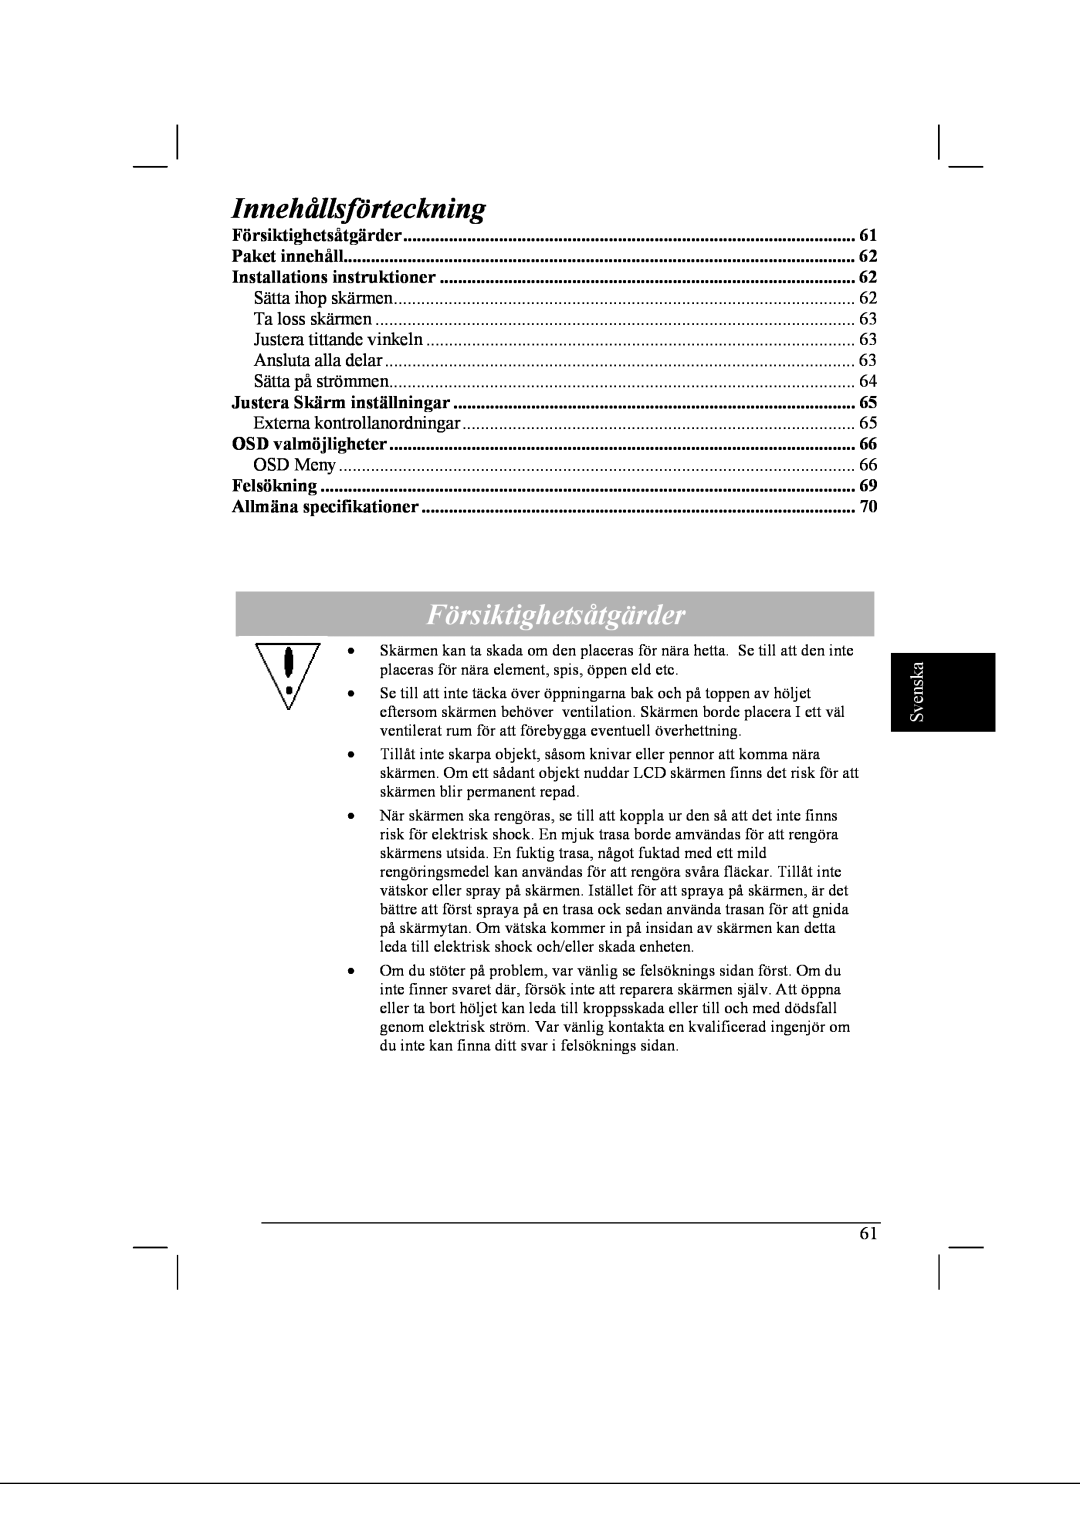 Acer AL2021 manual Innehållsförteckning, Försiktighetsåtgärder, Svenska 